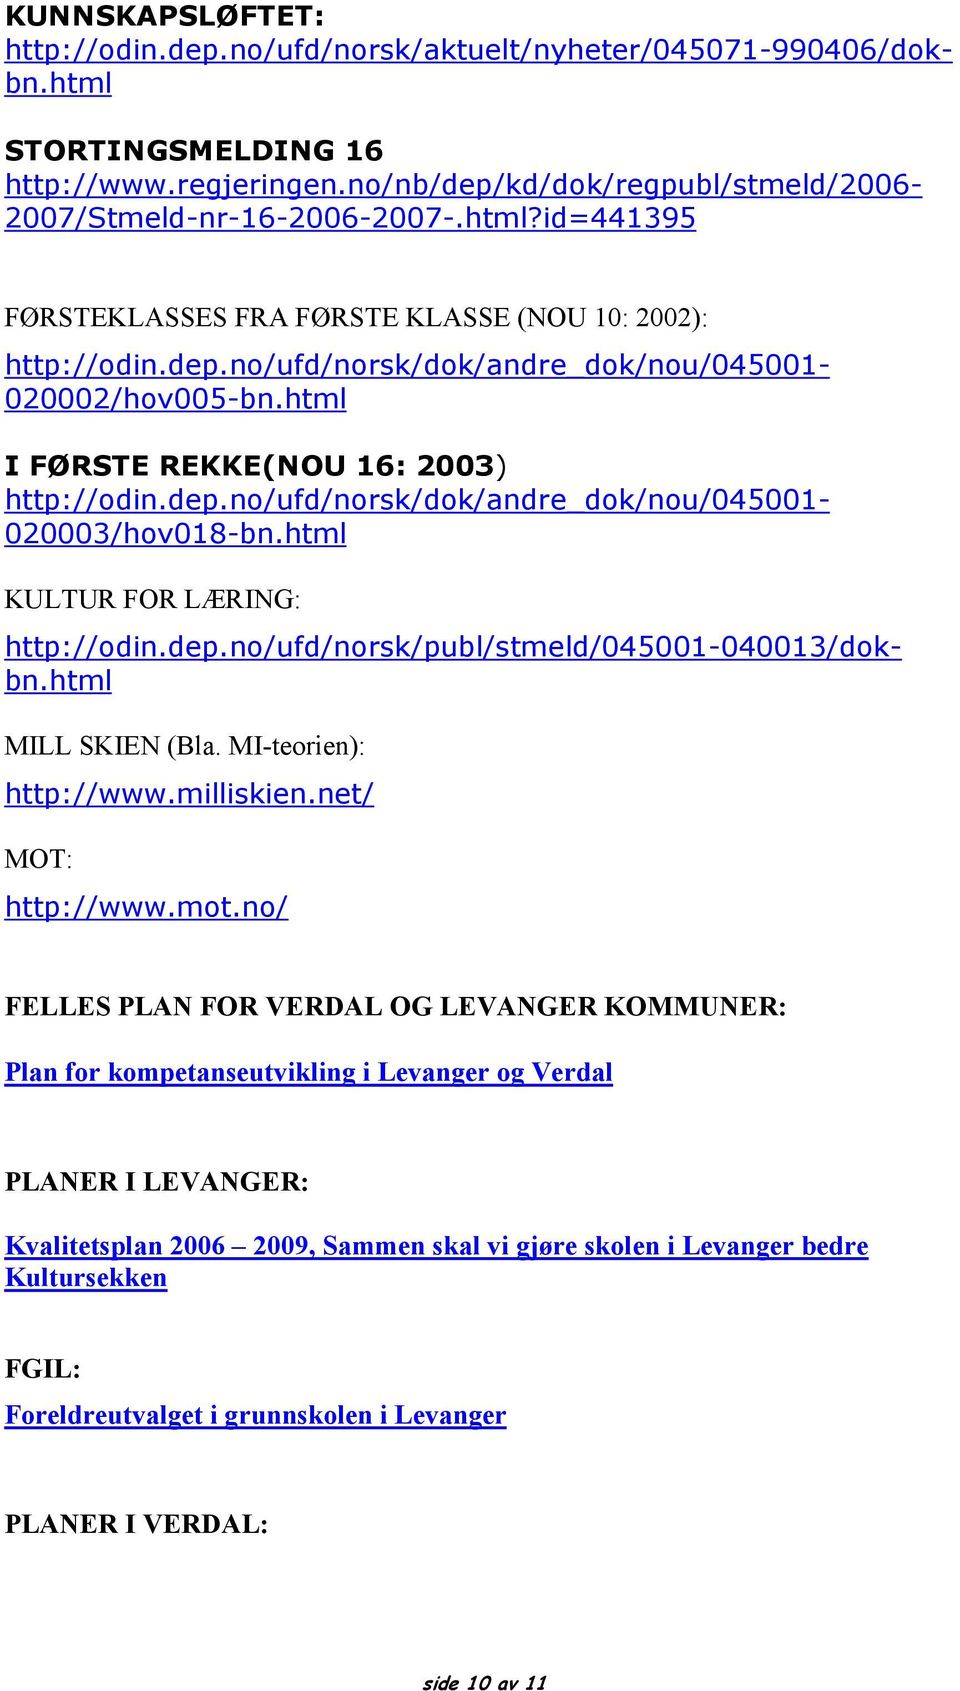 html KULTUR FOR LÆRING: http://odin.dep.no/ufd/norsk/publ/stmeld/045001-040013/dokbn.html MILL SKIEN (Bla. MI-teorien): http://www.milliskien.net/ MOT: http://www.mot.